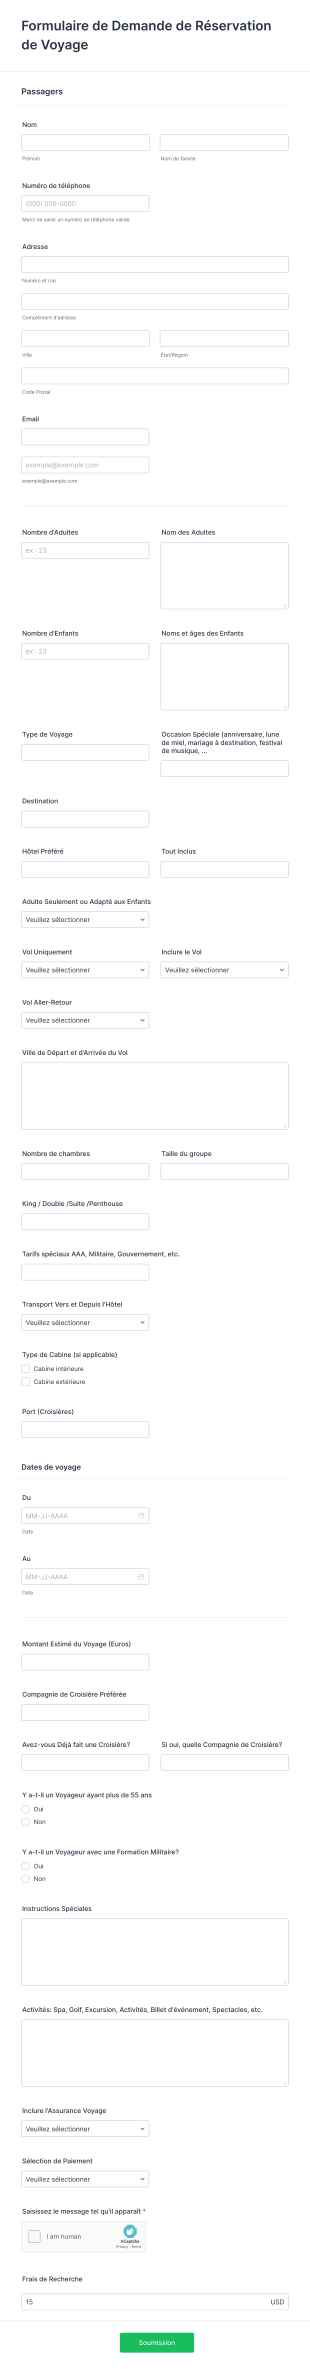 Formulaire De Demande De Réservation De Voyage Xstream/Paycation Form Template